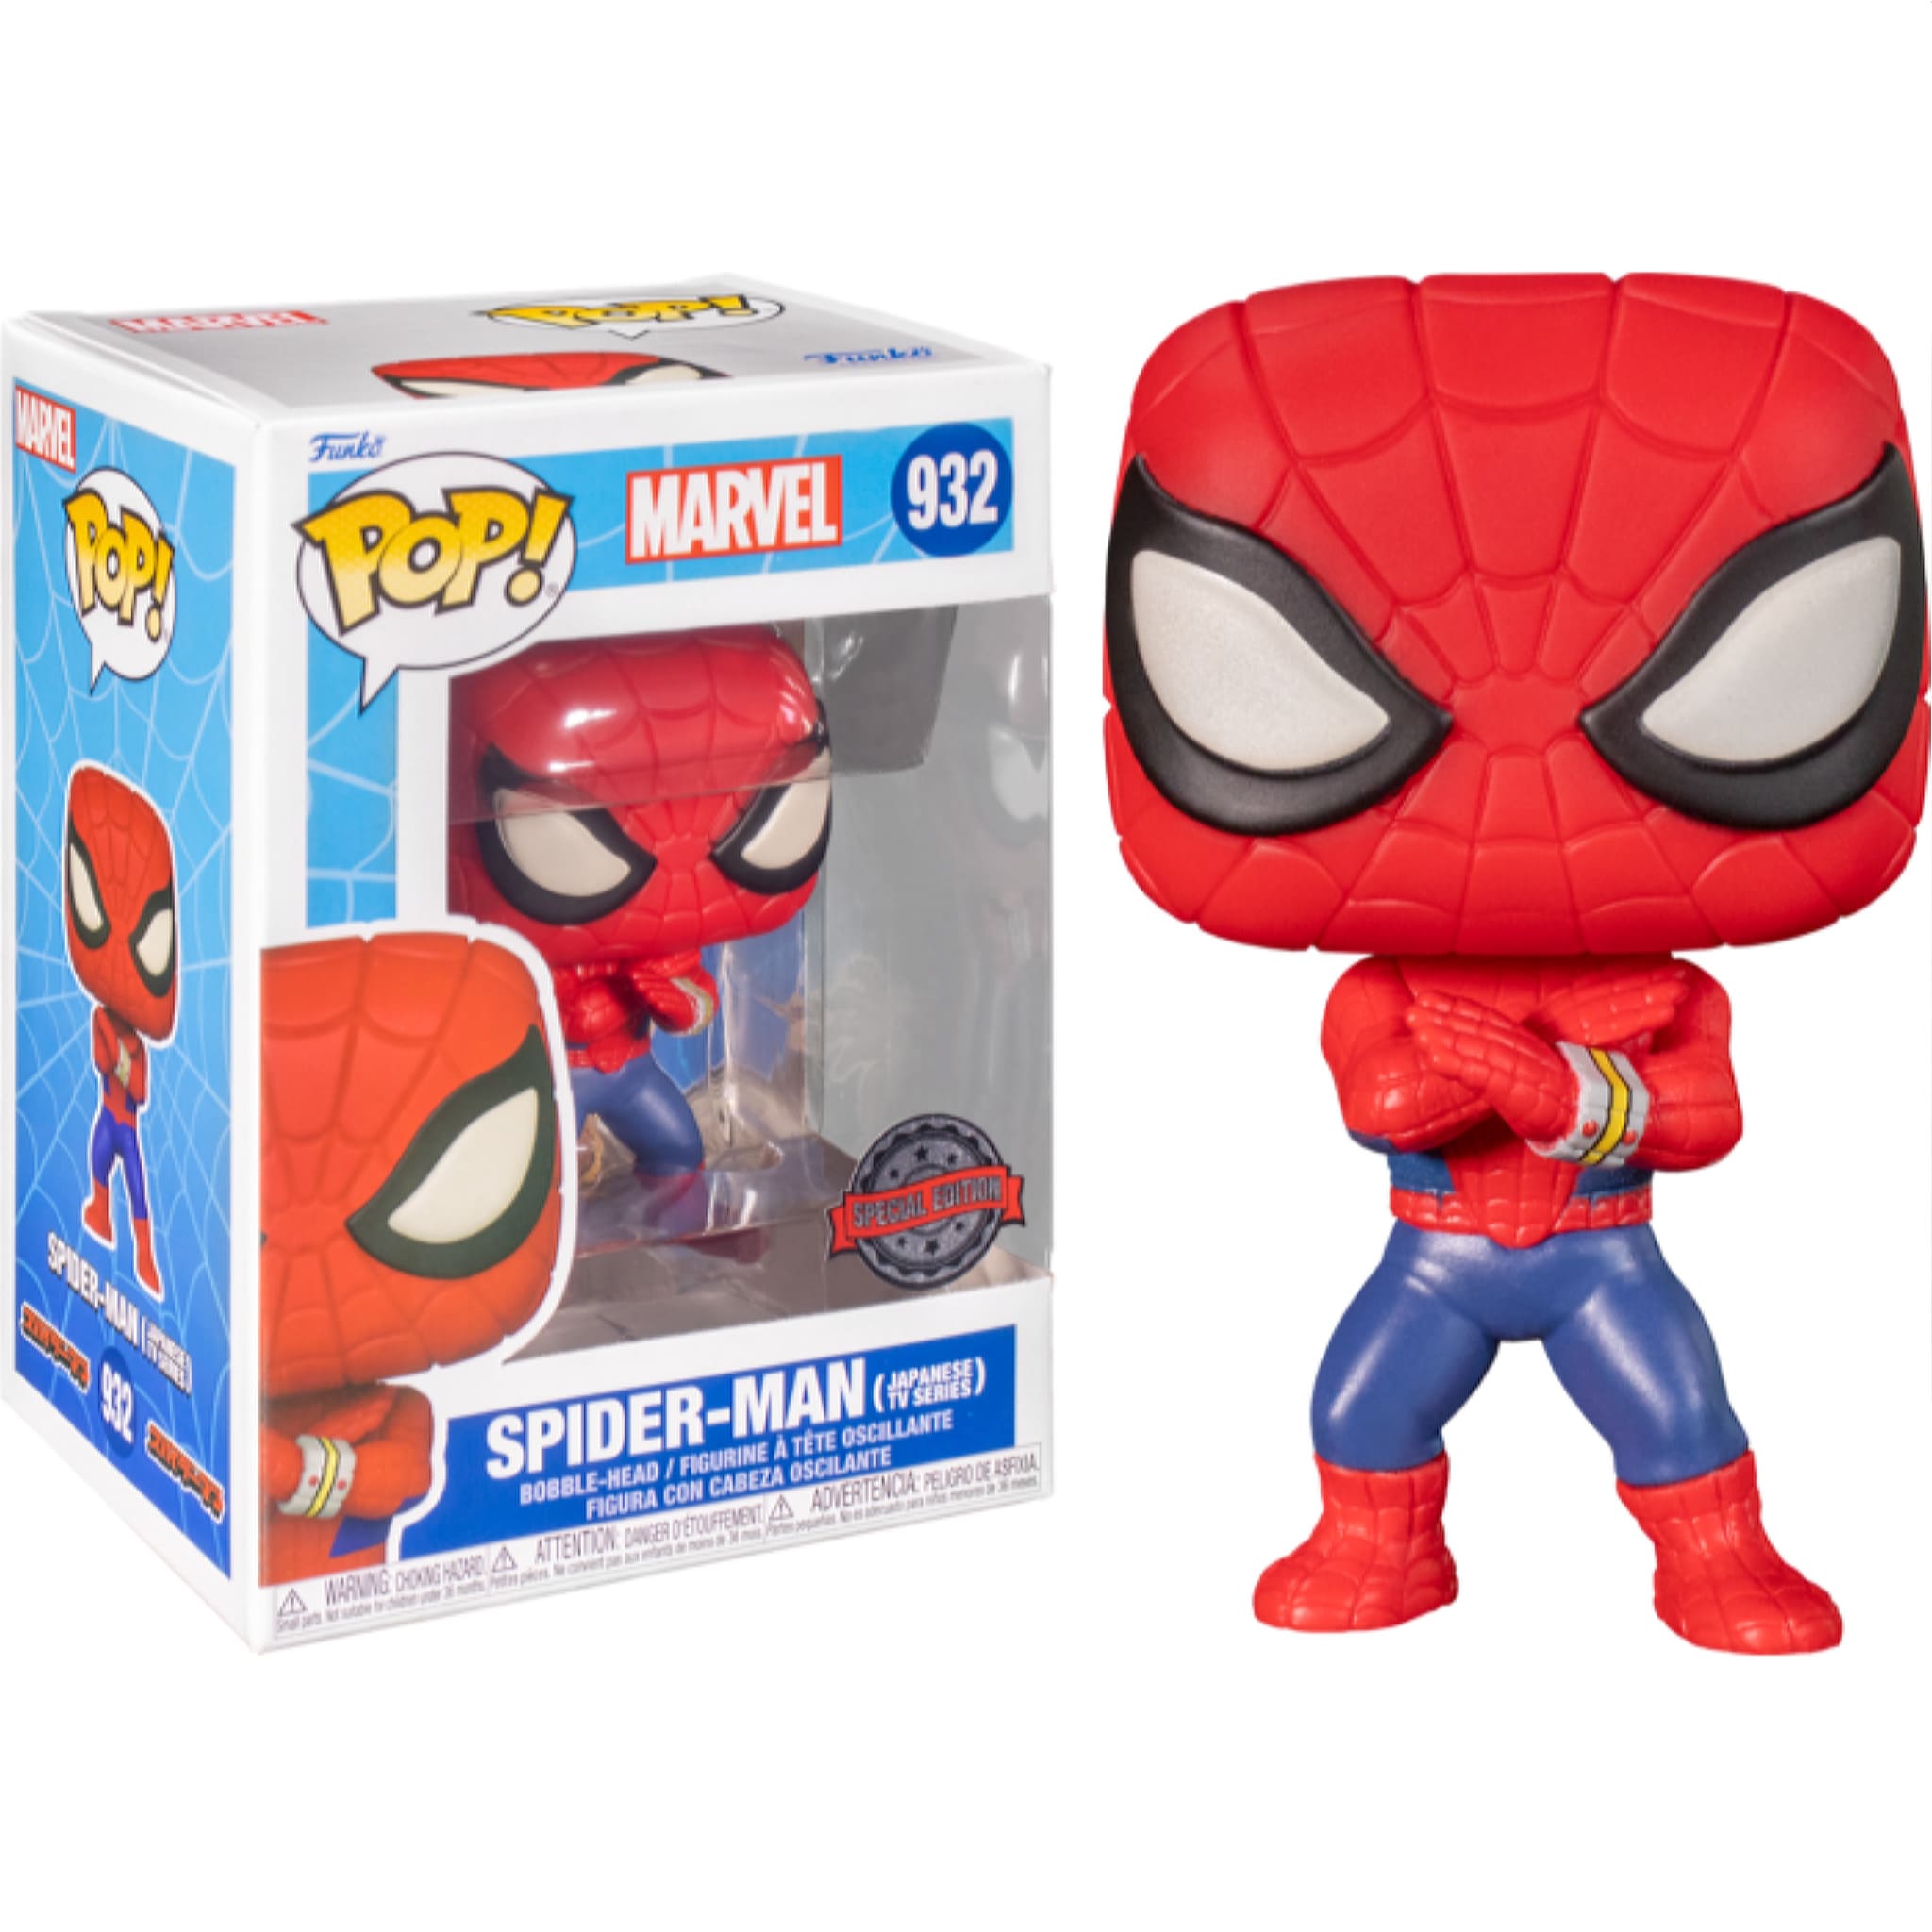 Marvel Spider-Man - Spider-Man Japanese TV Series Funko Pop! Vinyl Figure